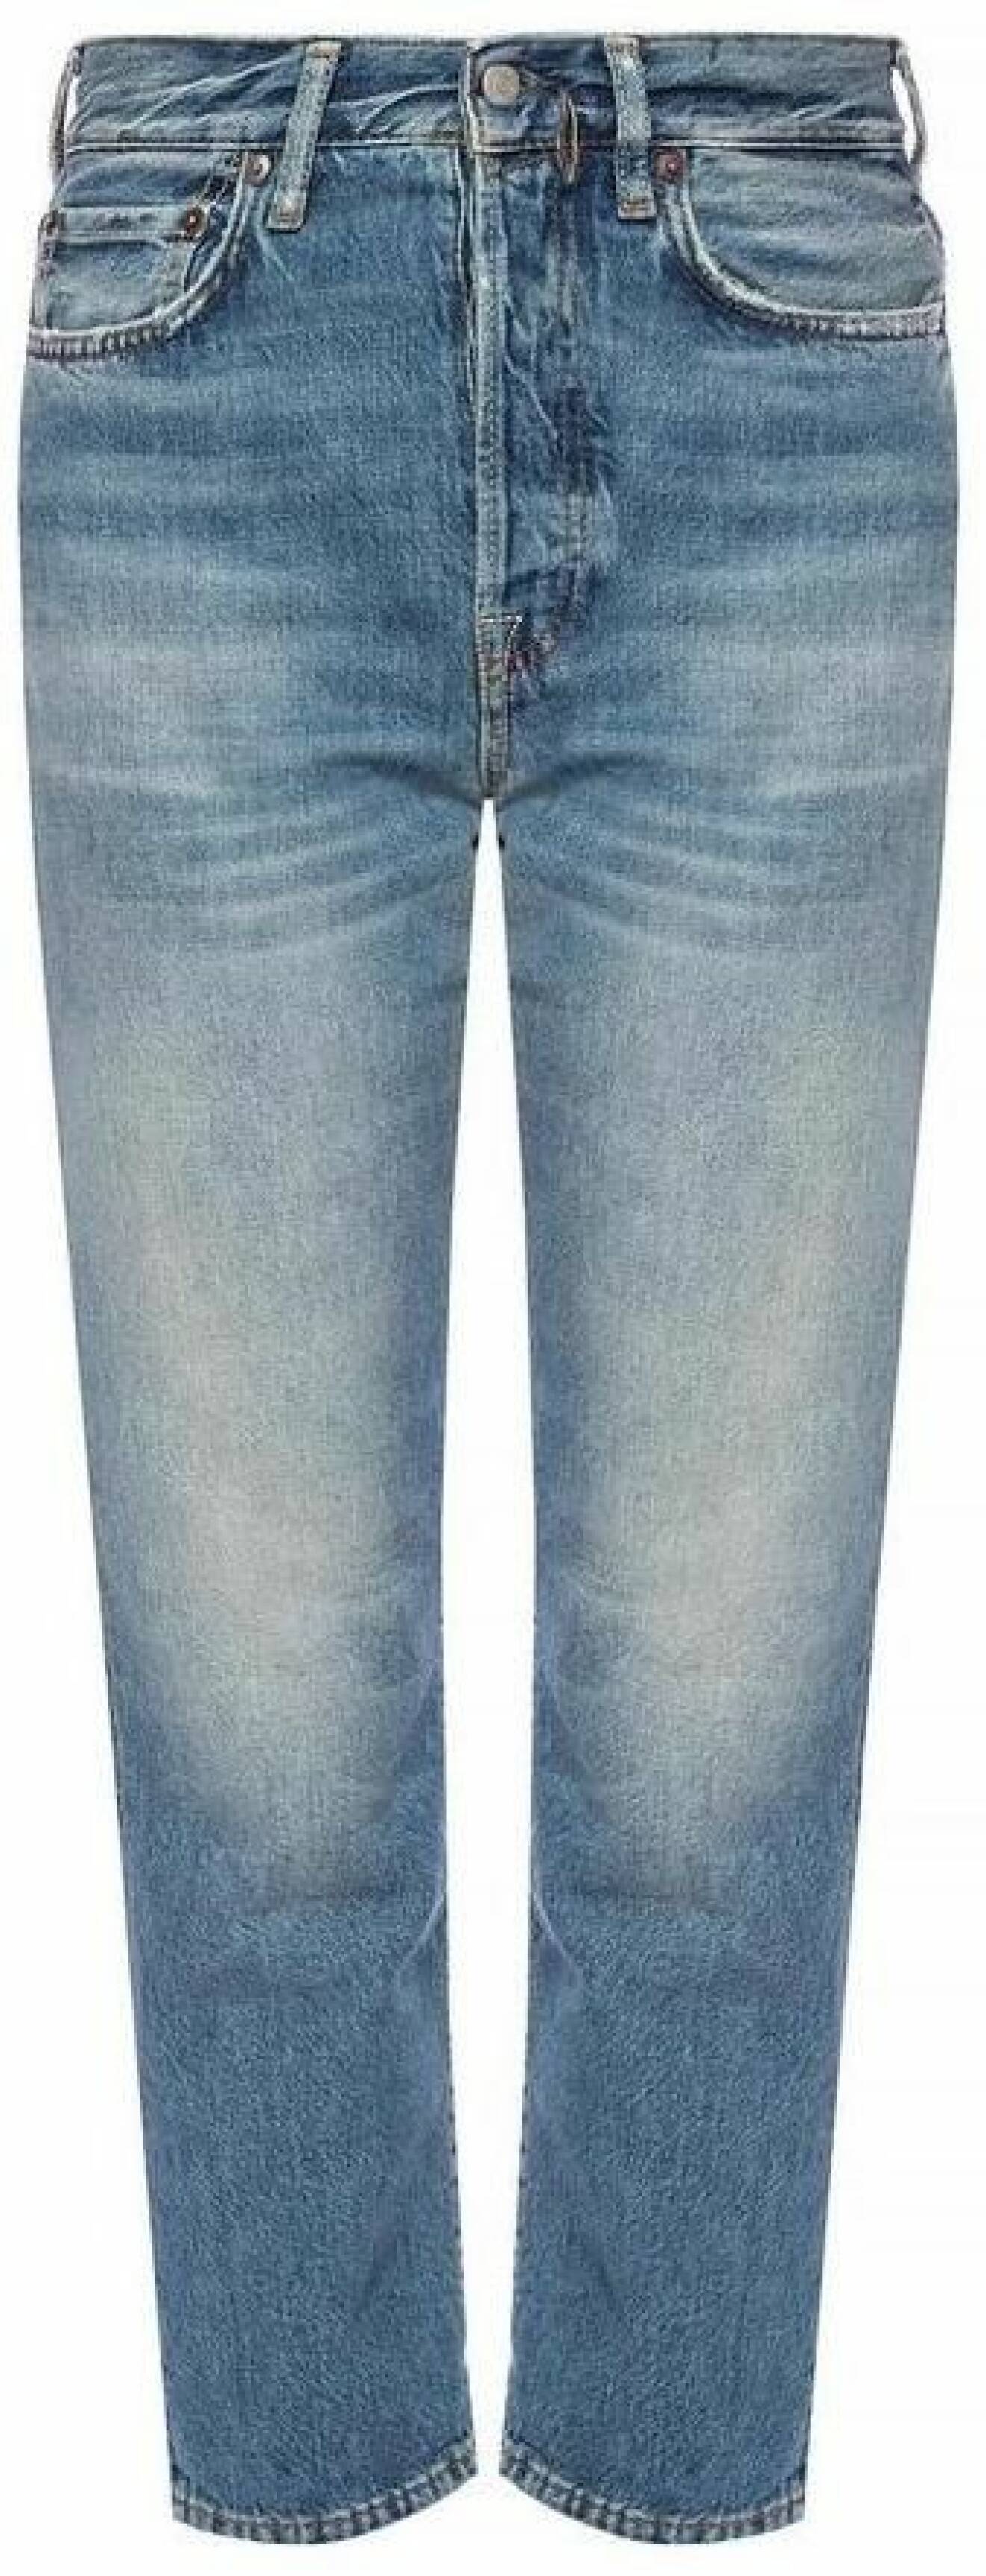 Jeans i rak modell från Acne Studios.